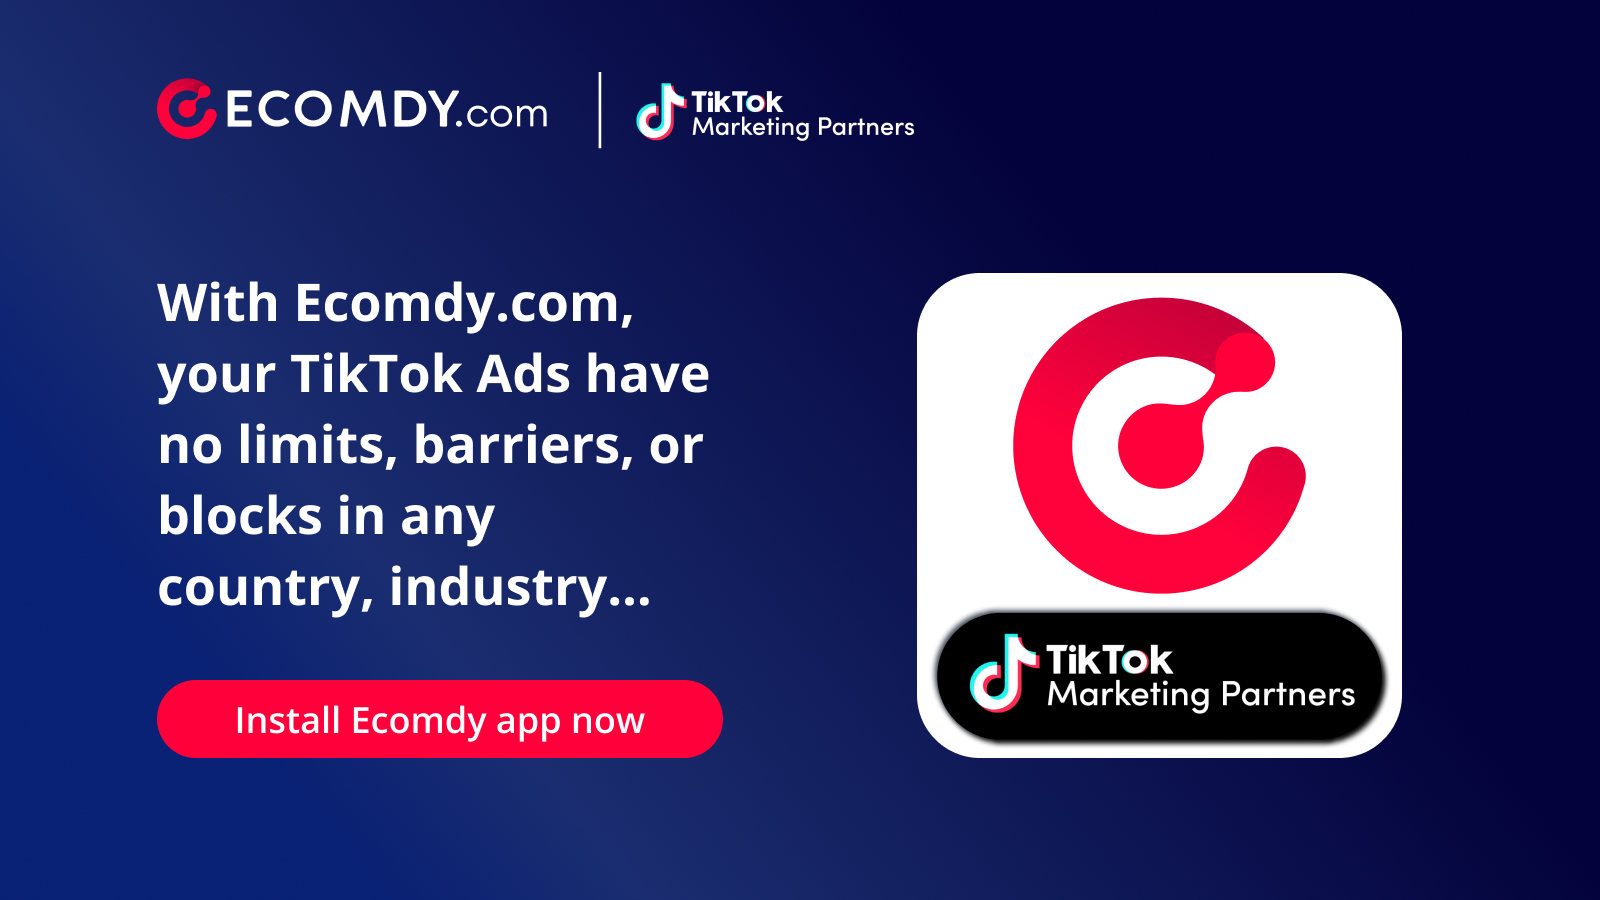 Ecomdy.com - Partenaire officiel de marketing TikTok